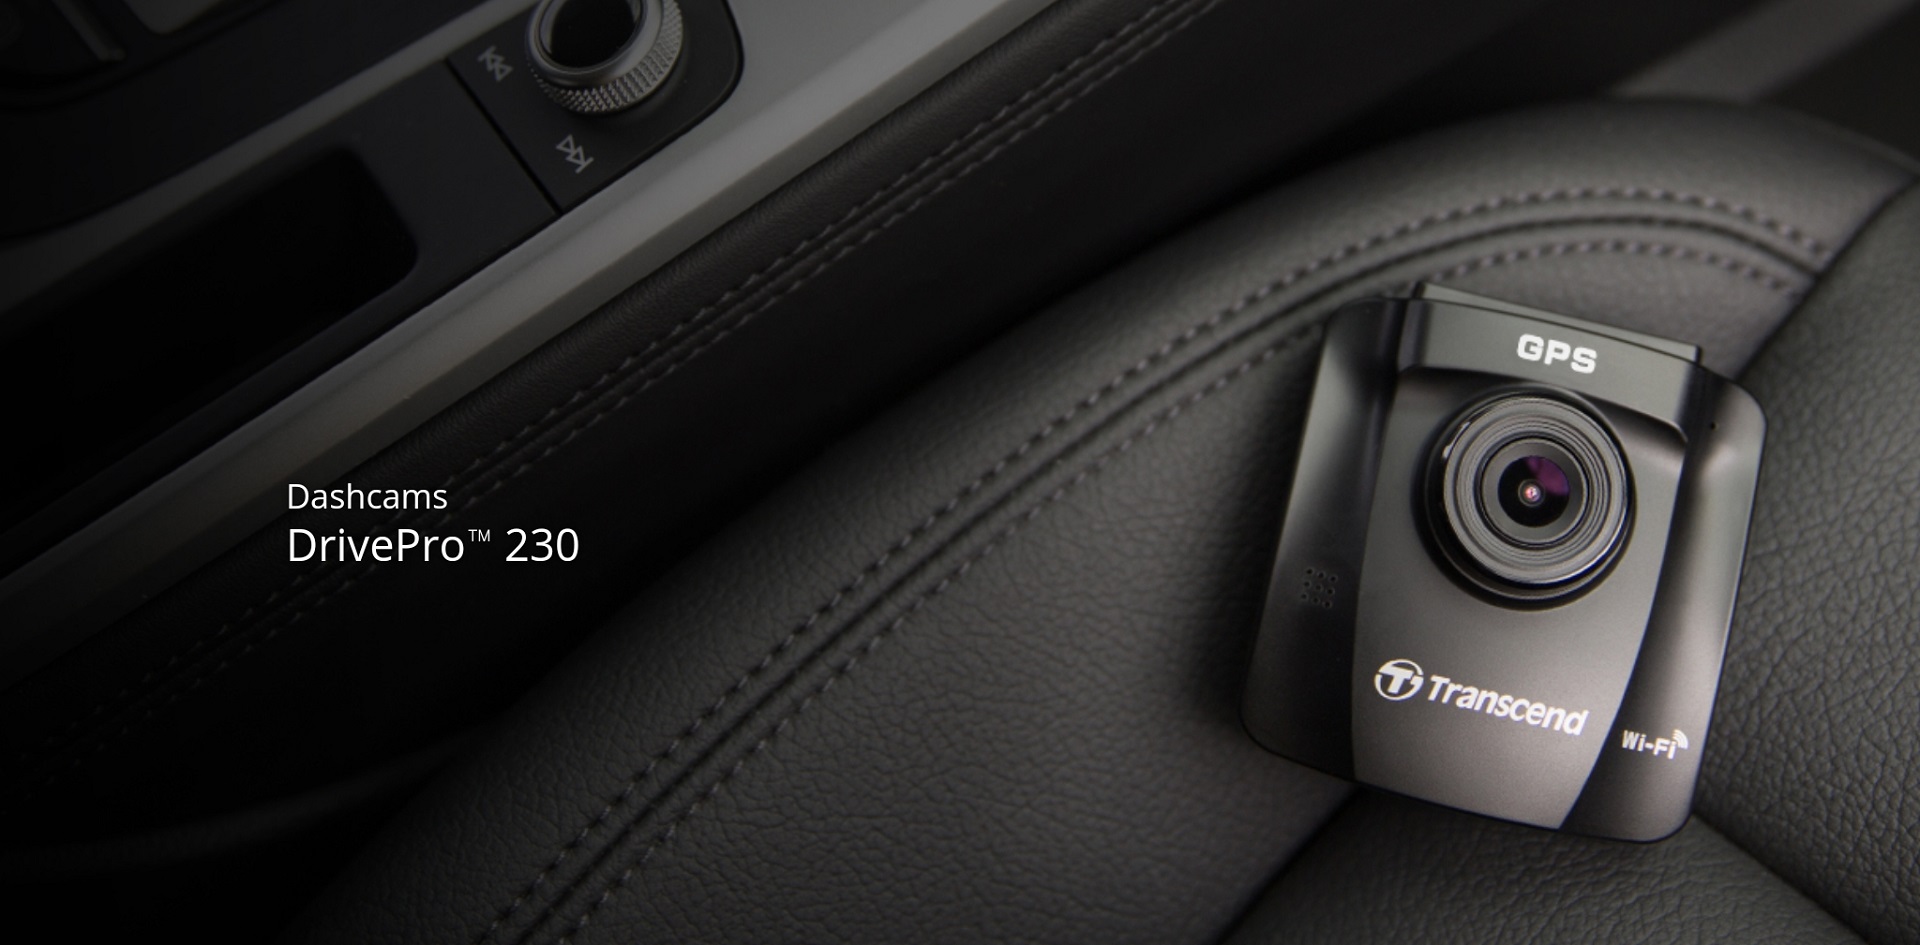 Transcend ra mắt camera hành trình DrivePro 230, lái xe an toàn và phong cách